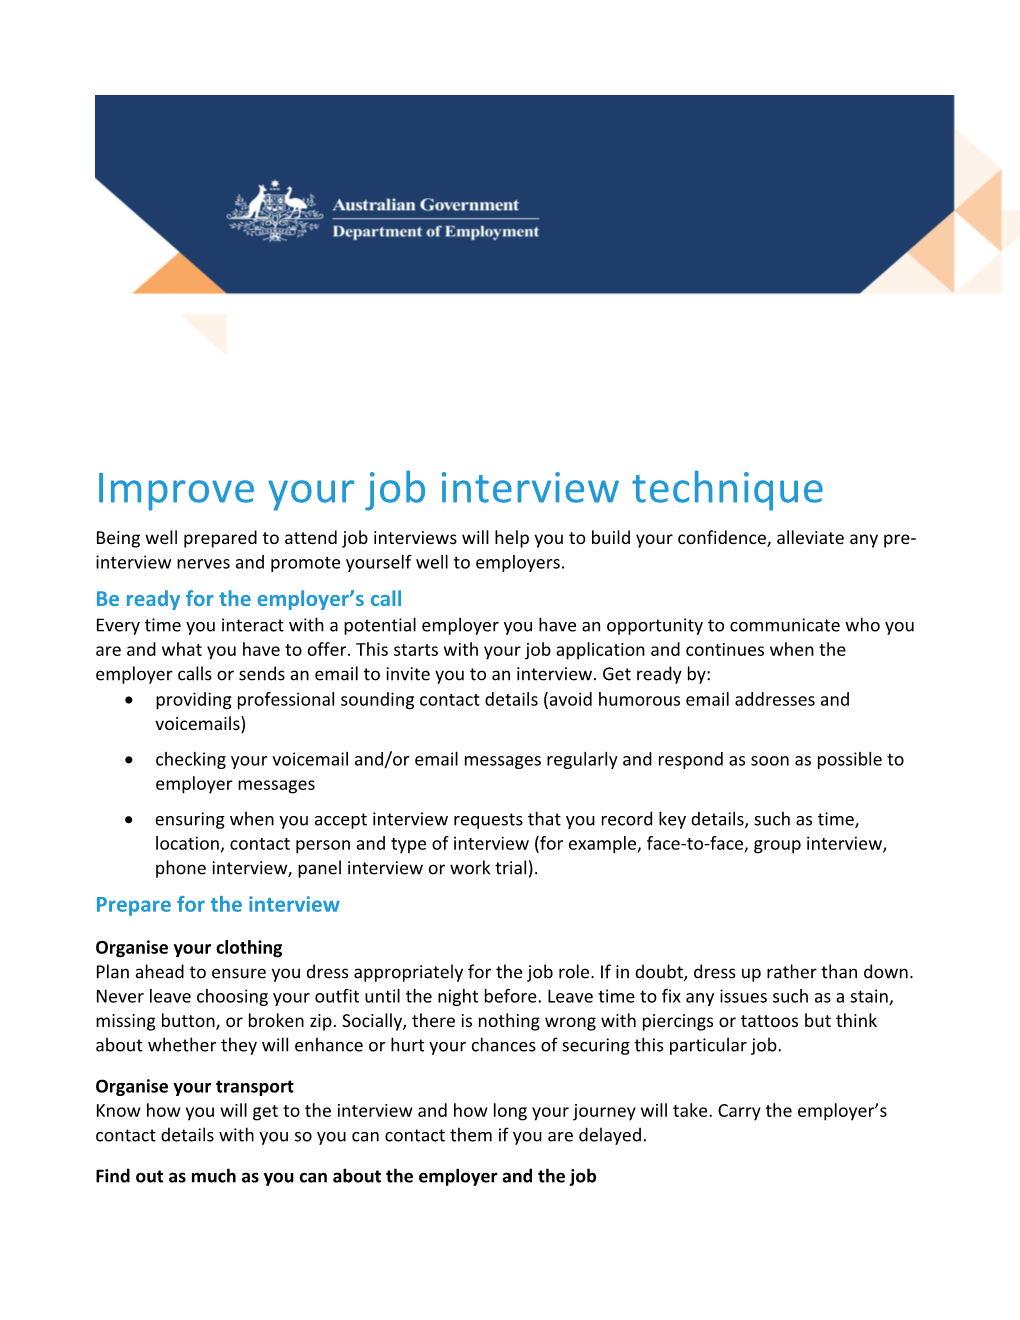 Improve Your Job Interview Technique